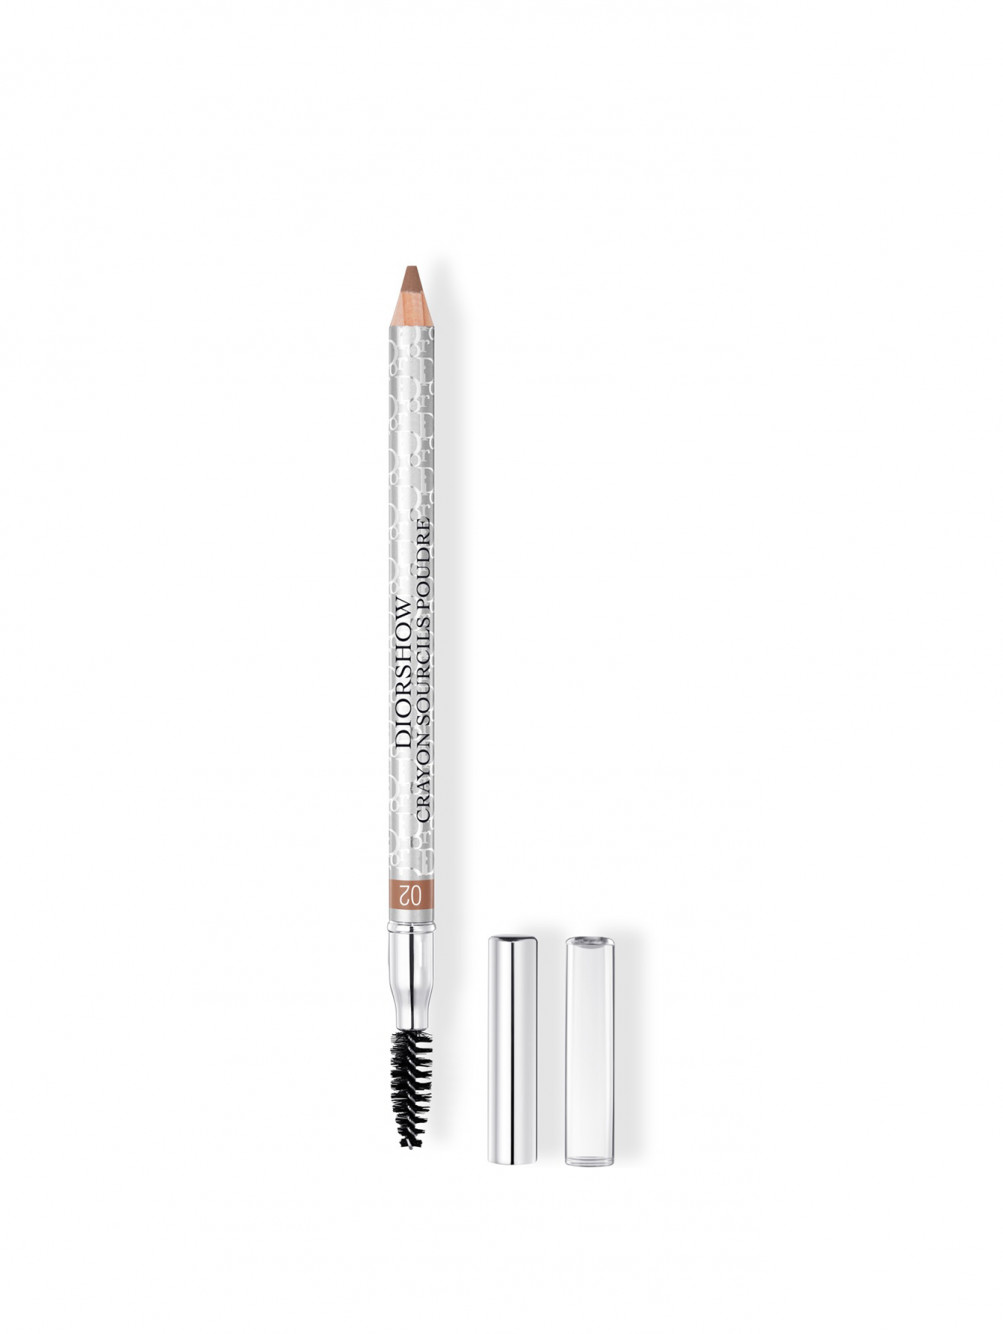 Diorshow Crayon Sourcils Poudre Водостойкий карандаш для бровей с точилкой 02 Каштановый - Общий вид